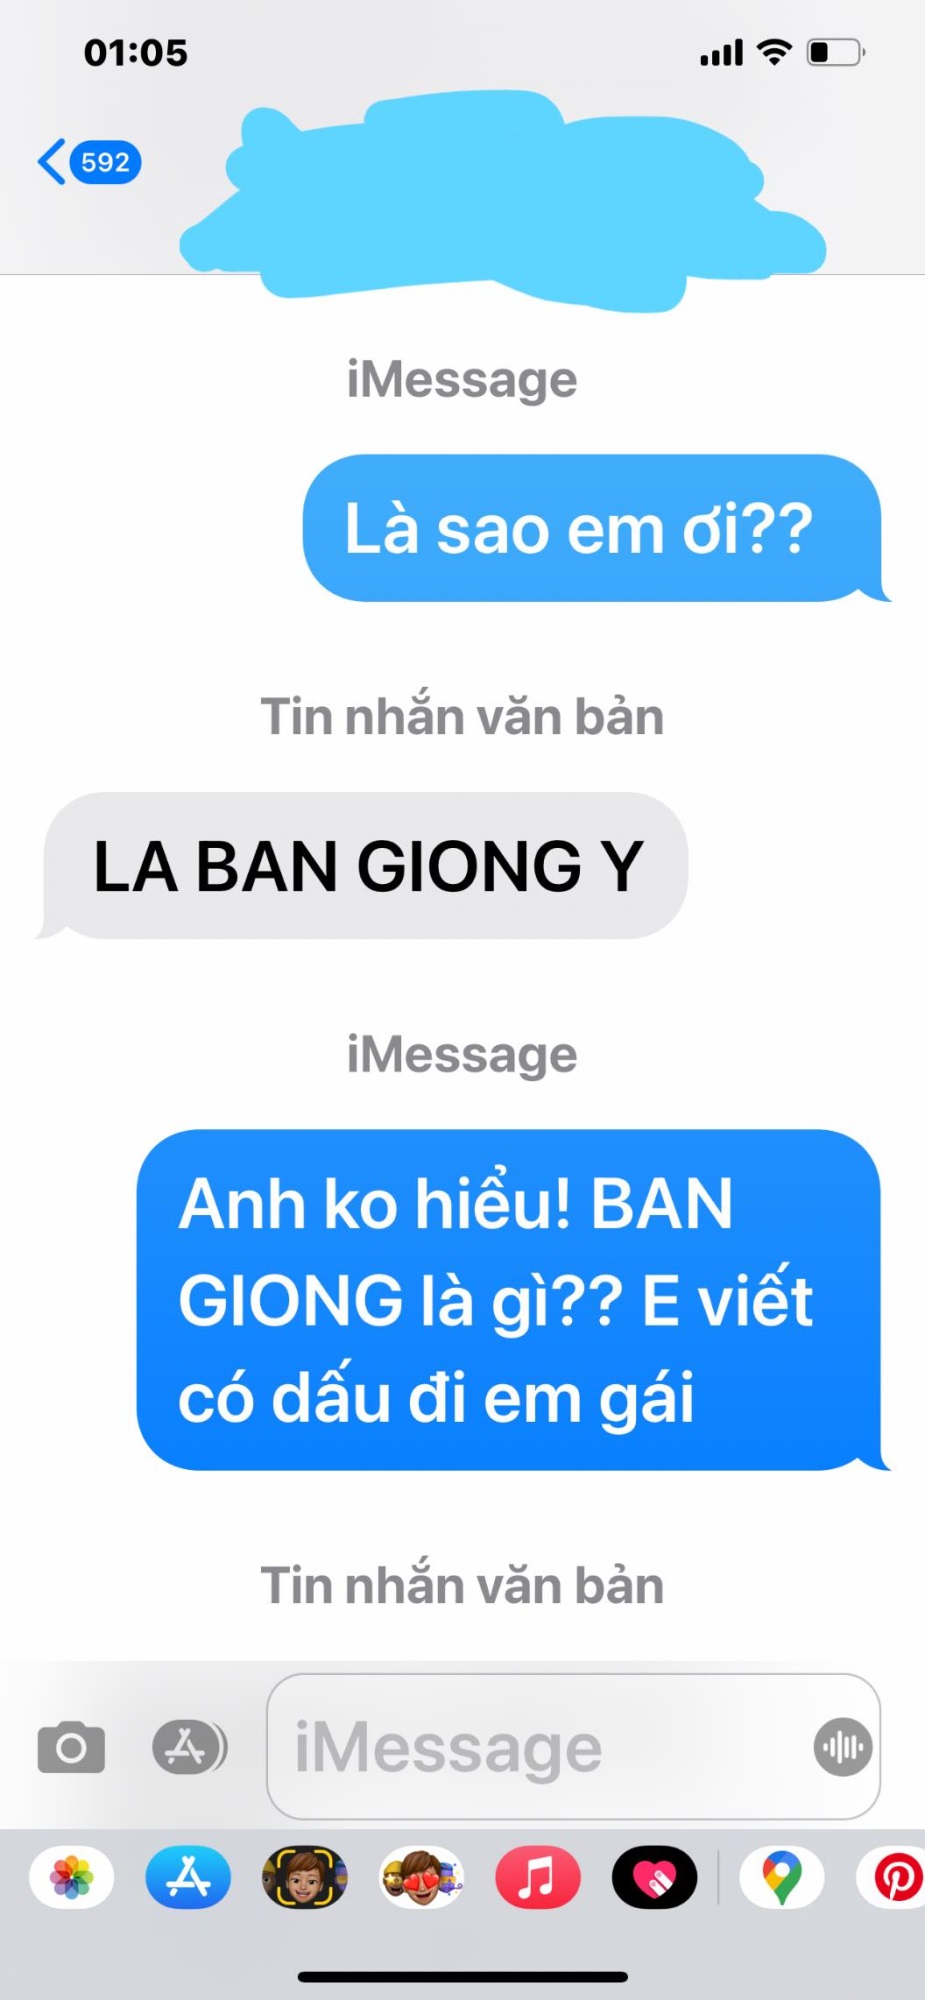 Dam Vinh Hung 2